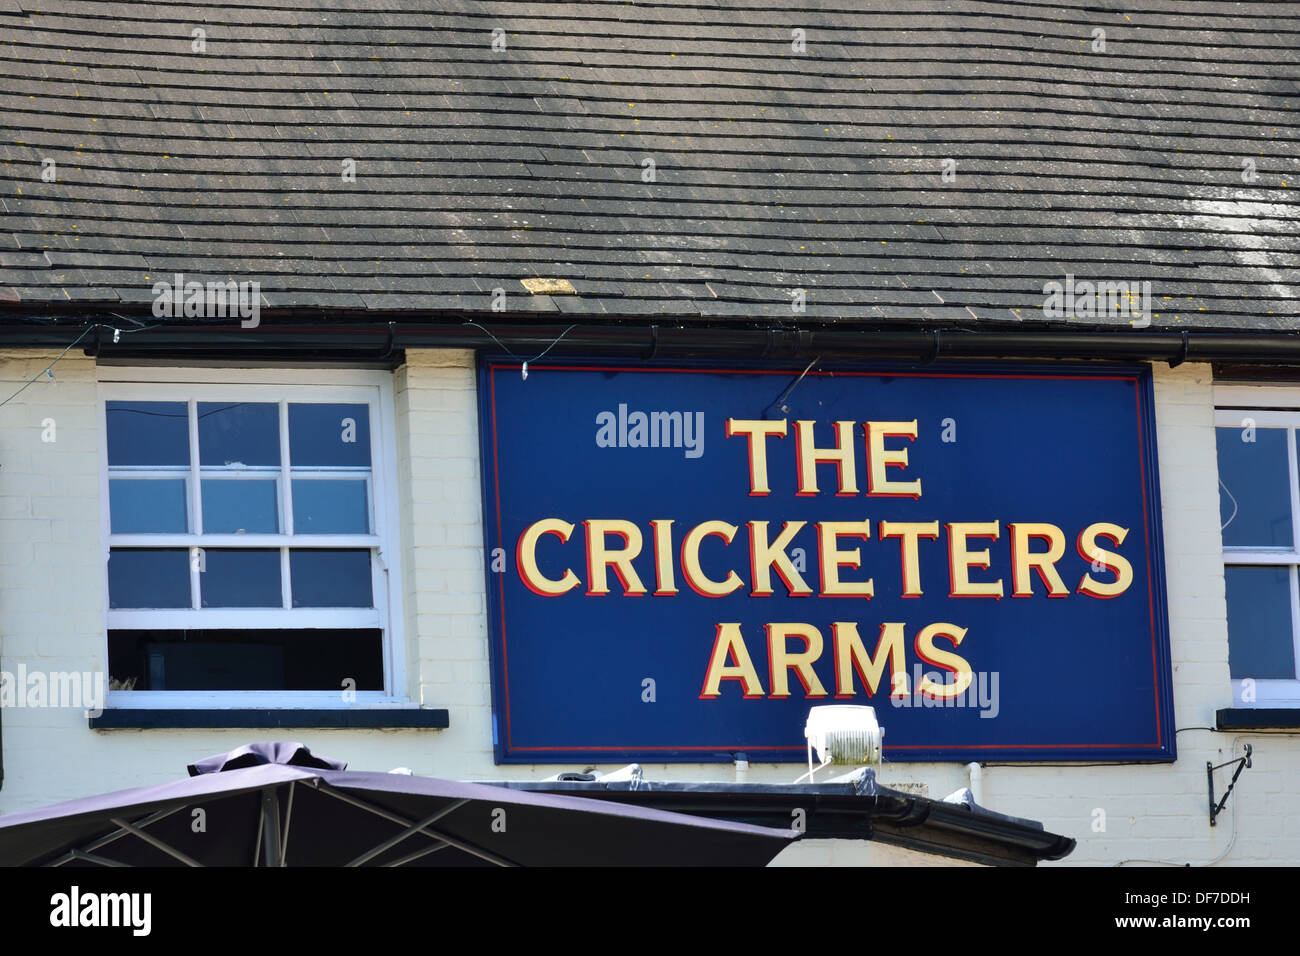 Cricketers arms enseigne de pub Banque D'Images